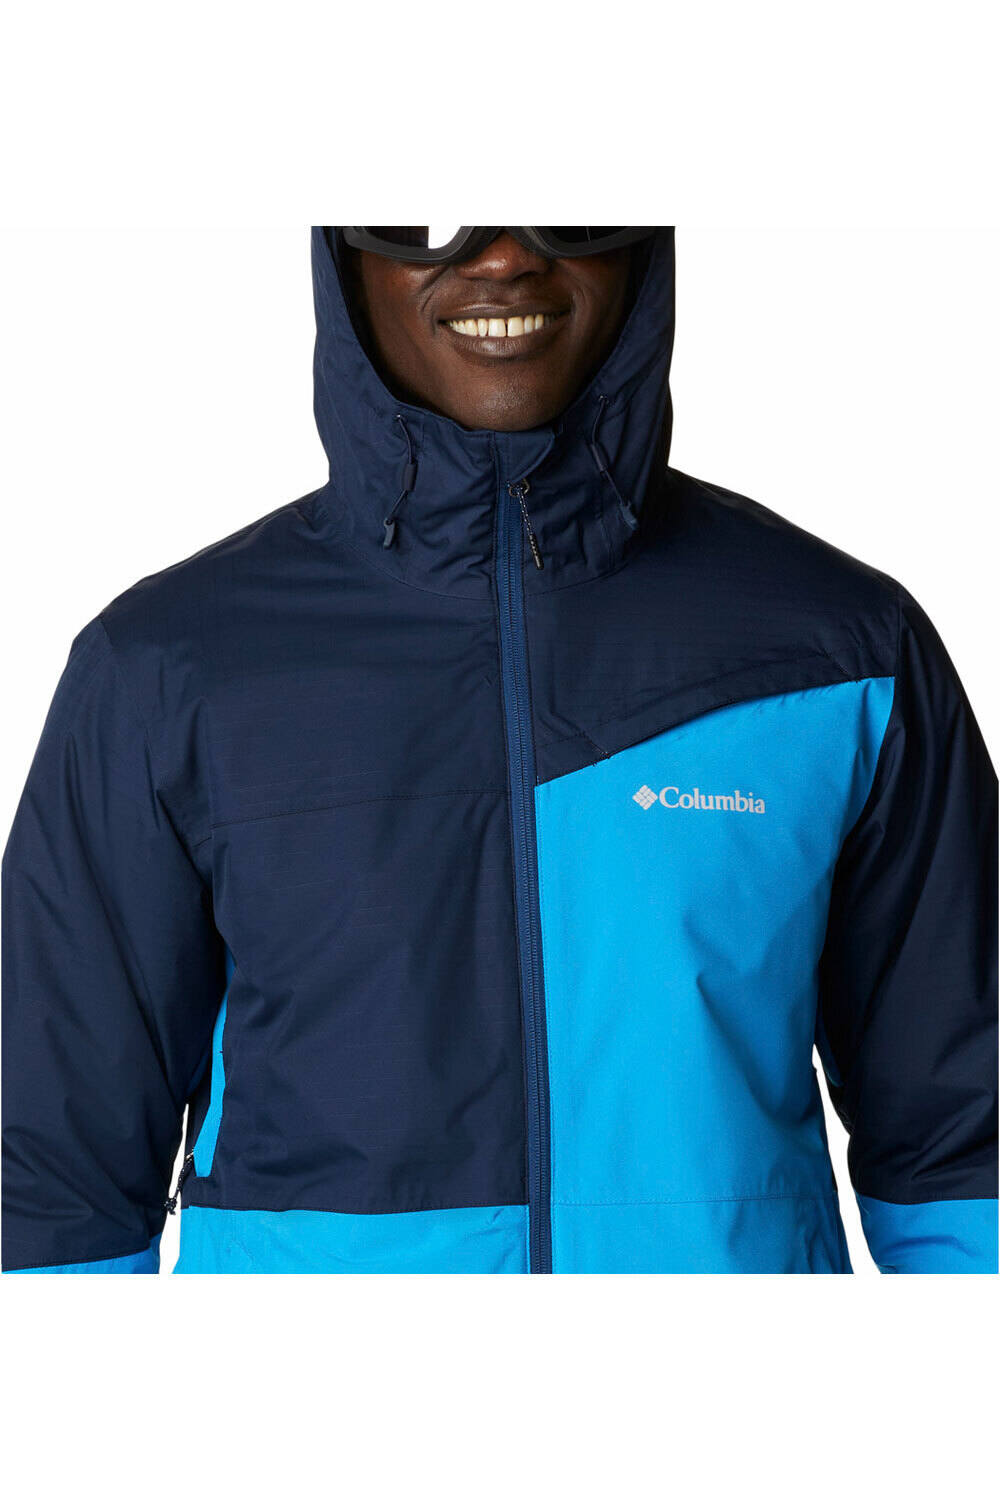 Columbia chaqueta esquí hombre ICEBERG POINT JACKET vista detalle